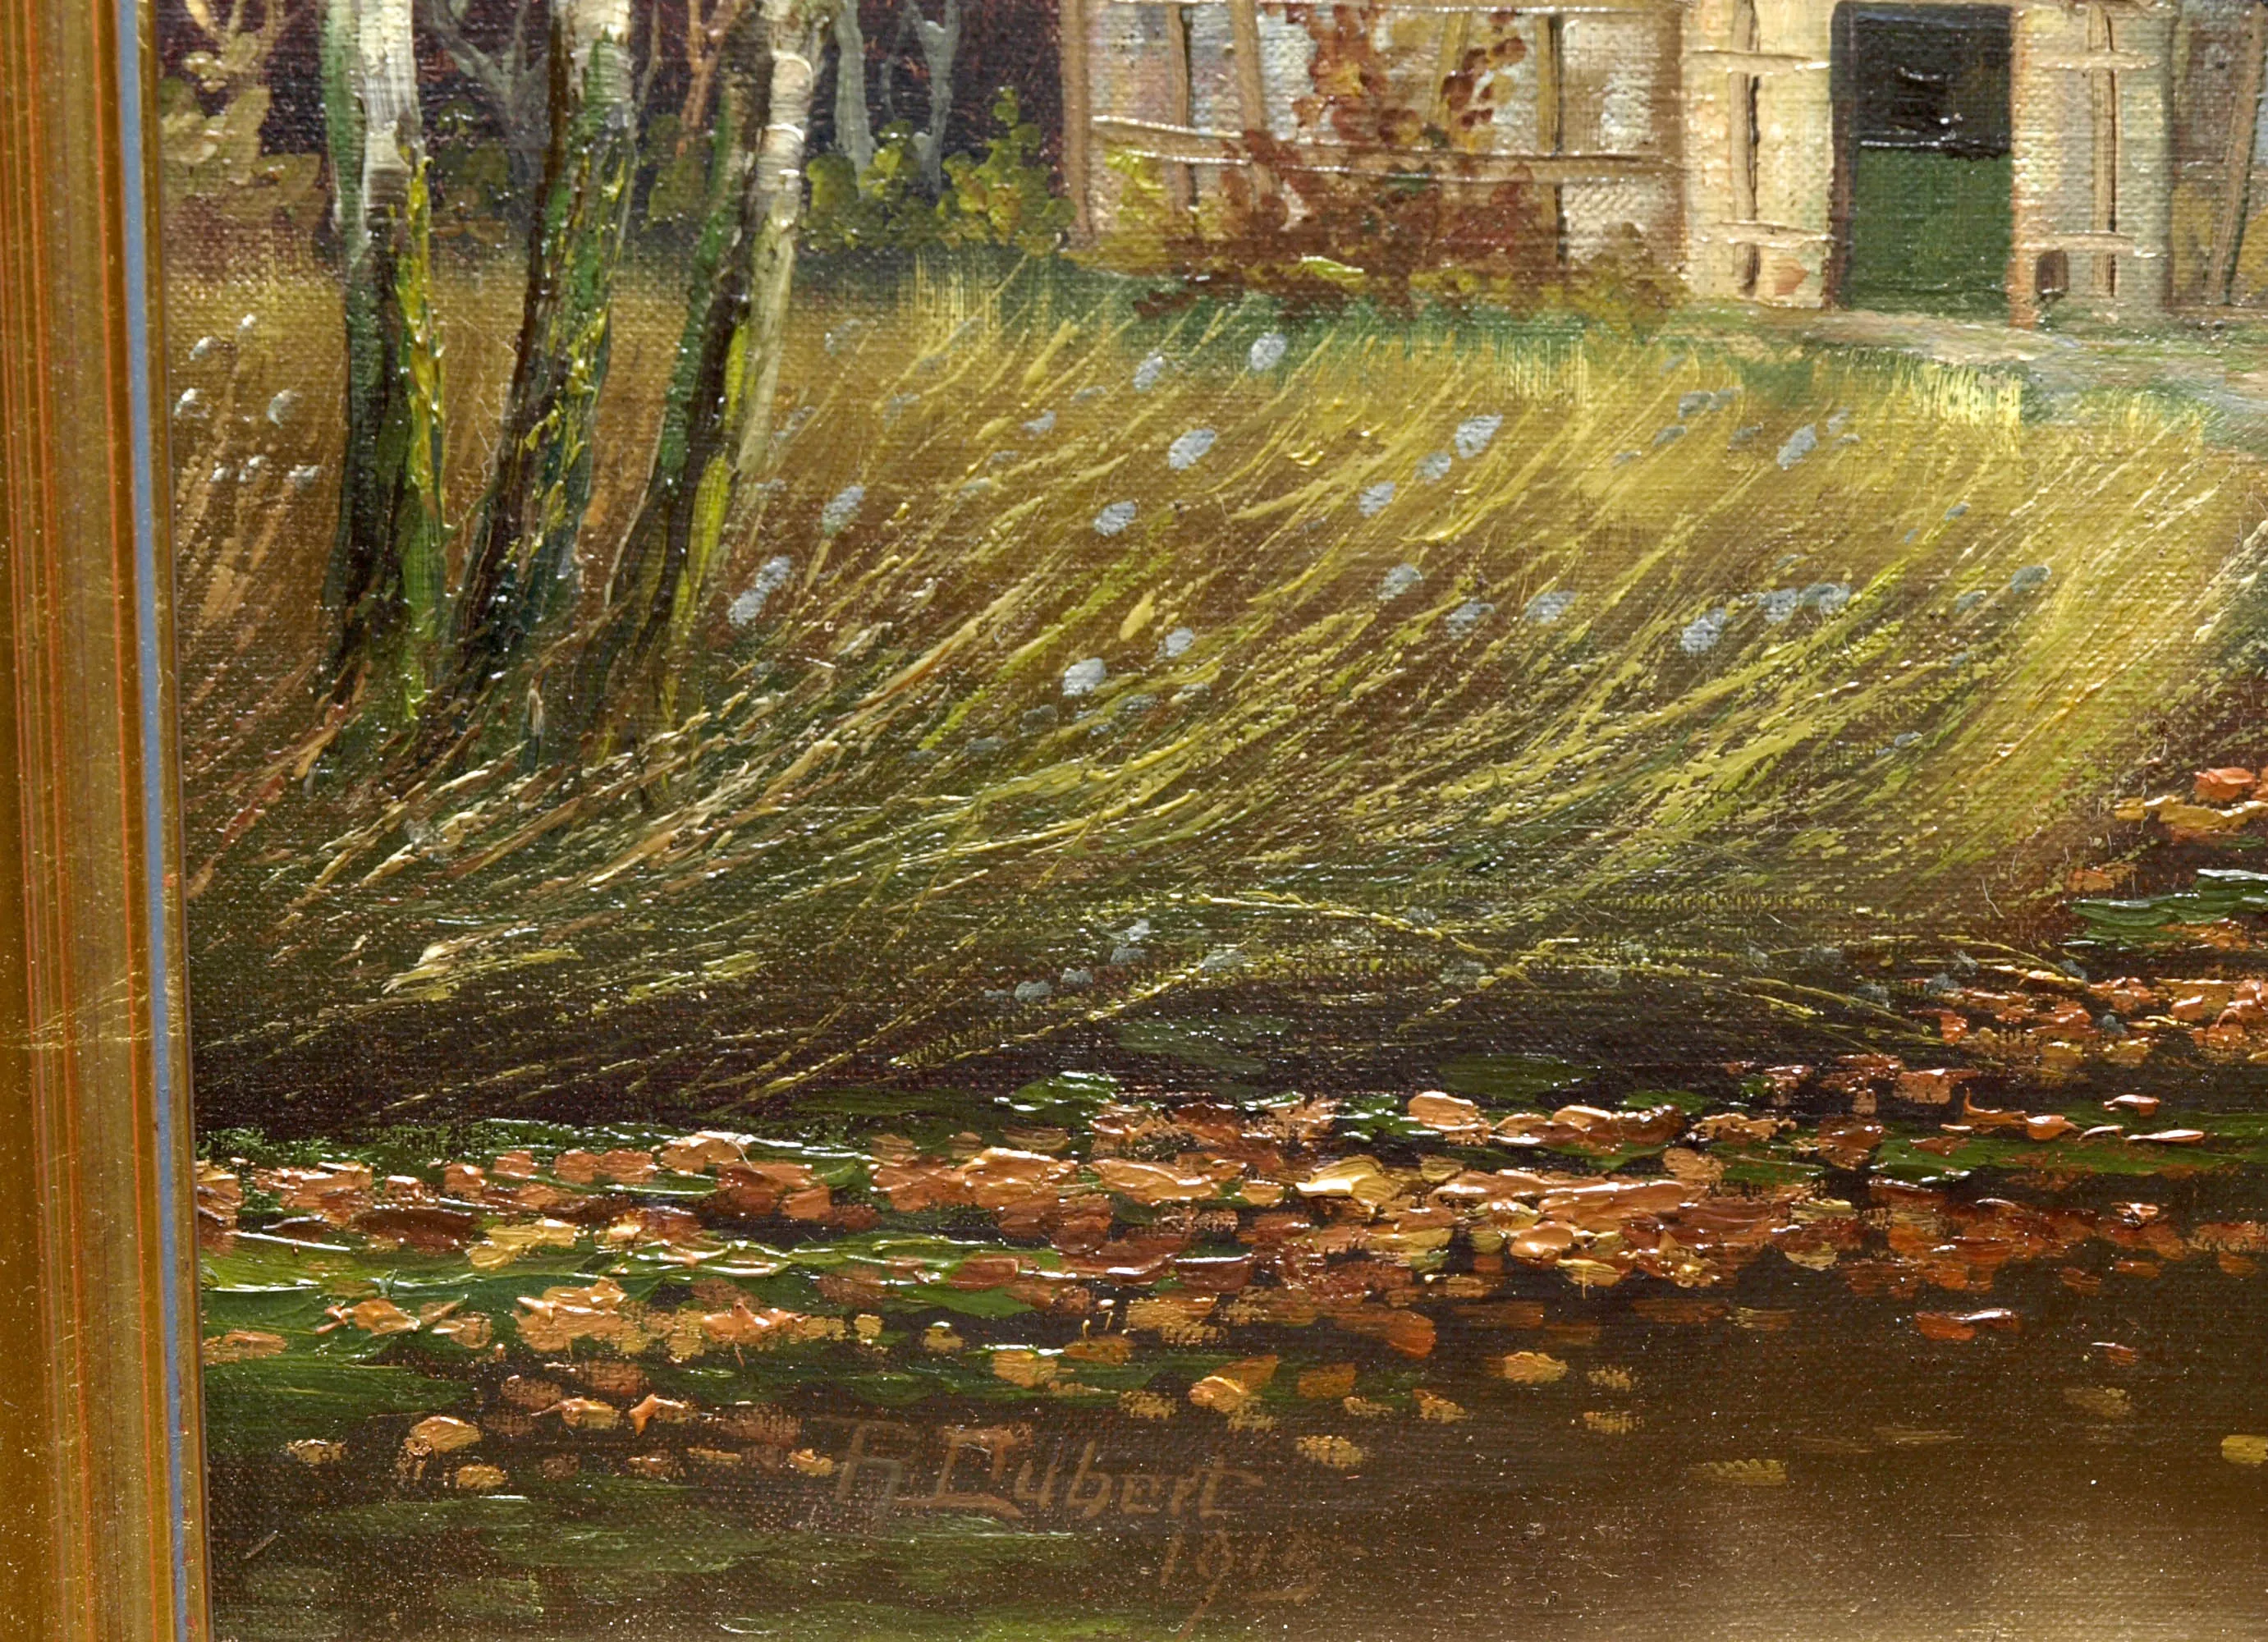 Gemälde mit Auenlandschaft von 1915